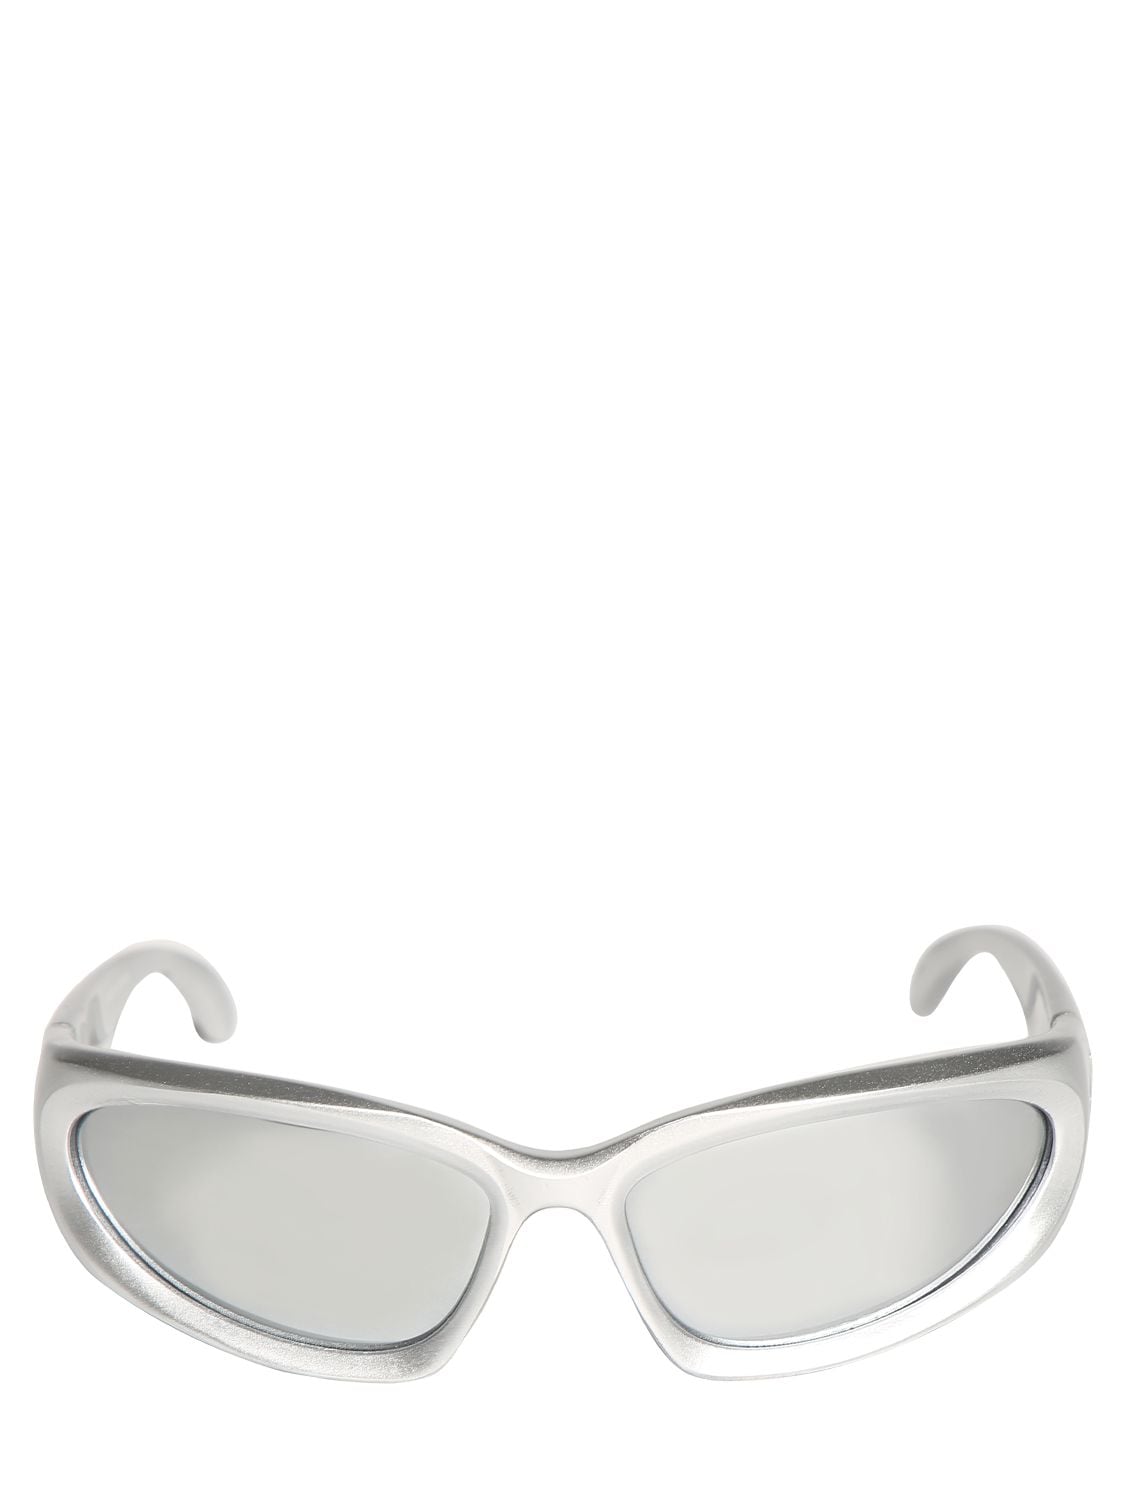 Balenciaga Swift Oval 0157s Sunglasses In Grey,black